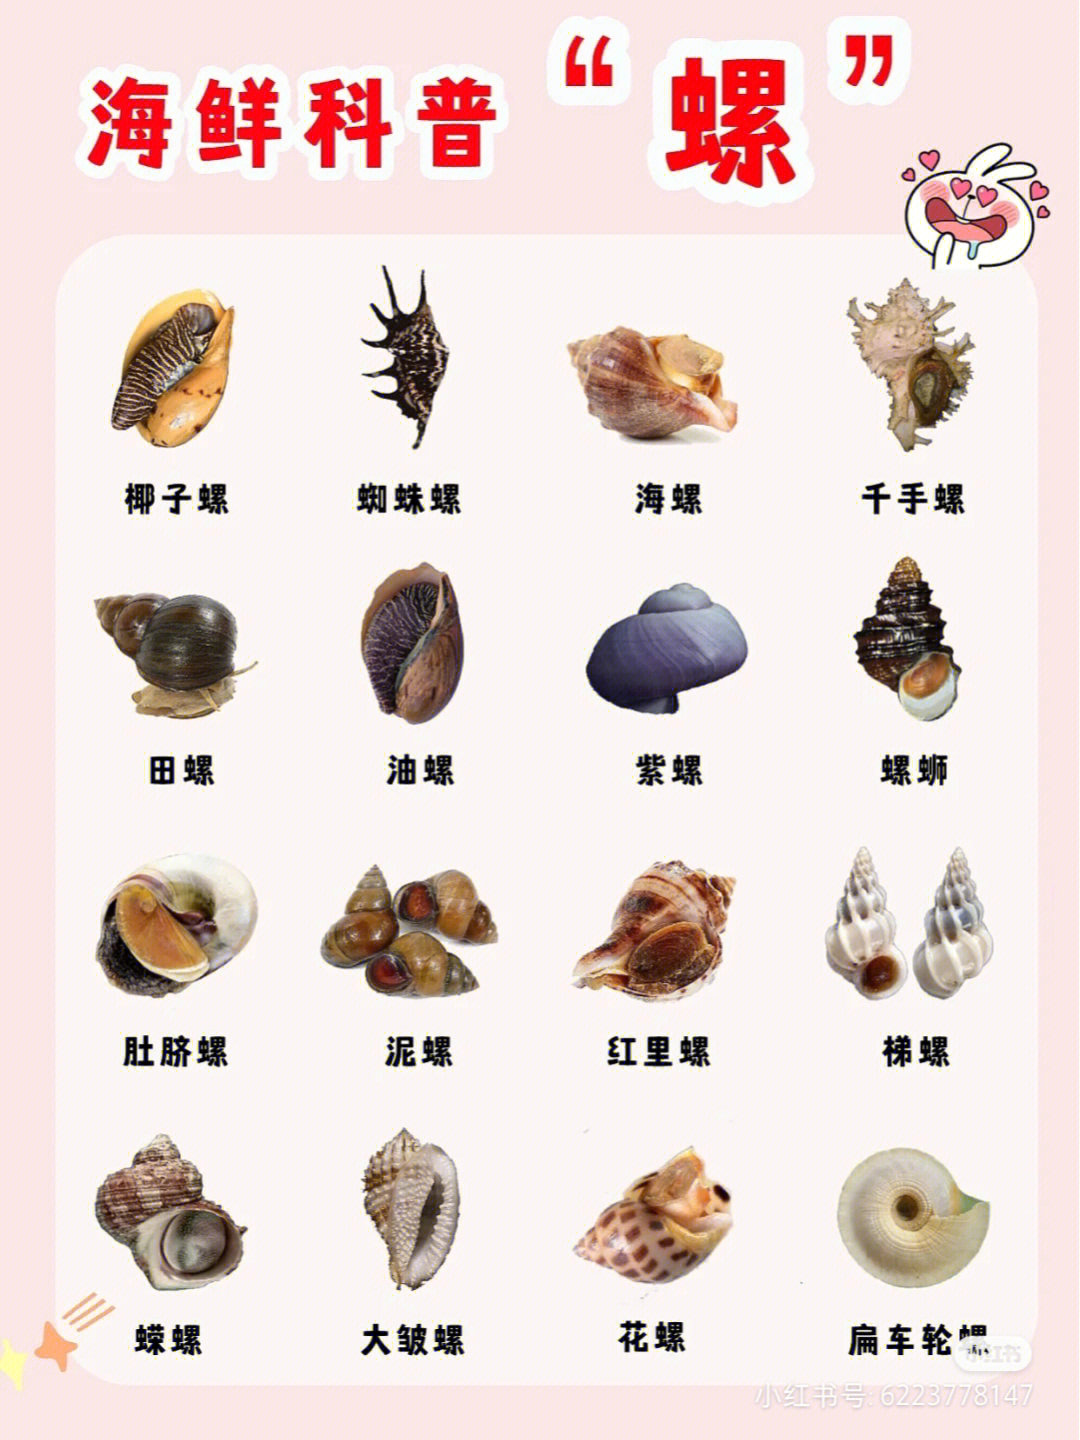 常见海螺名称和图片图片